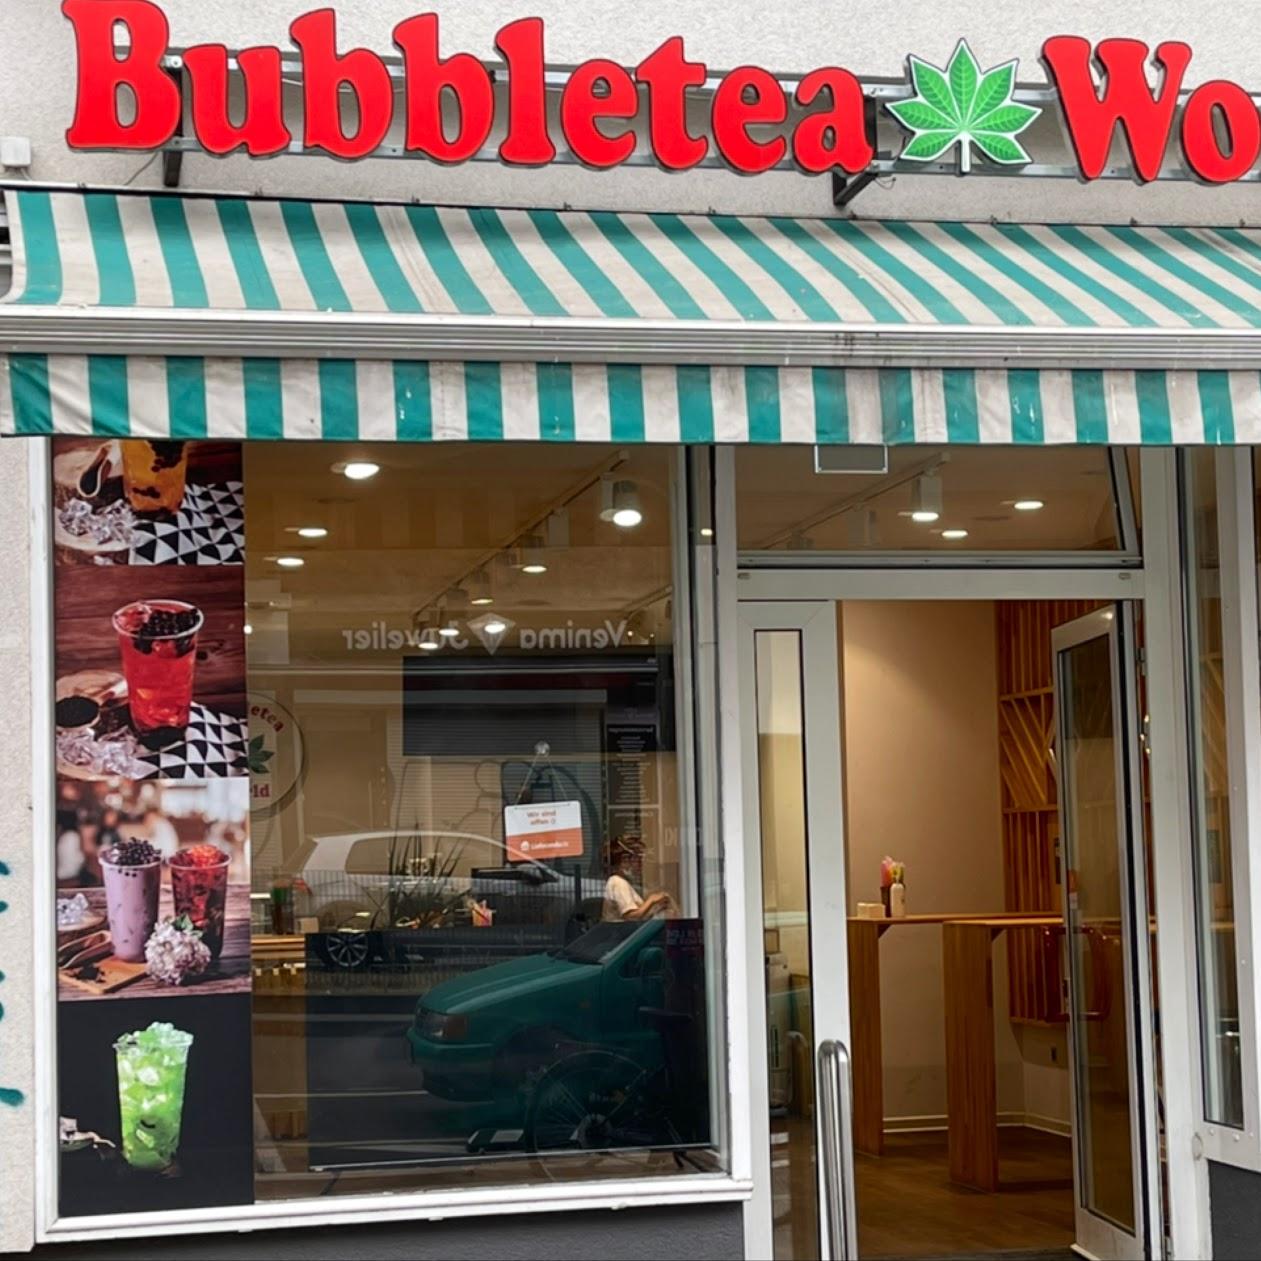 Restaurant "Bubbletea World" in Berlin